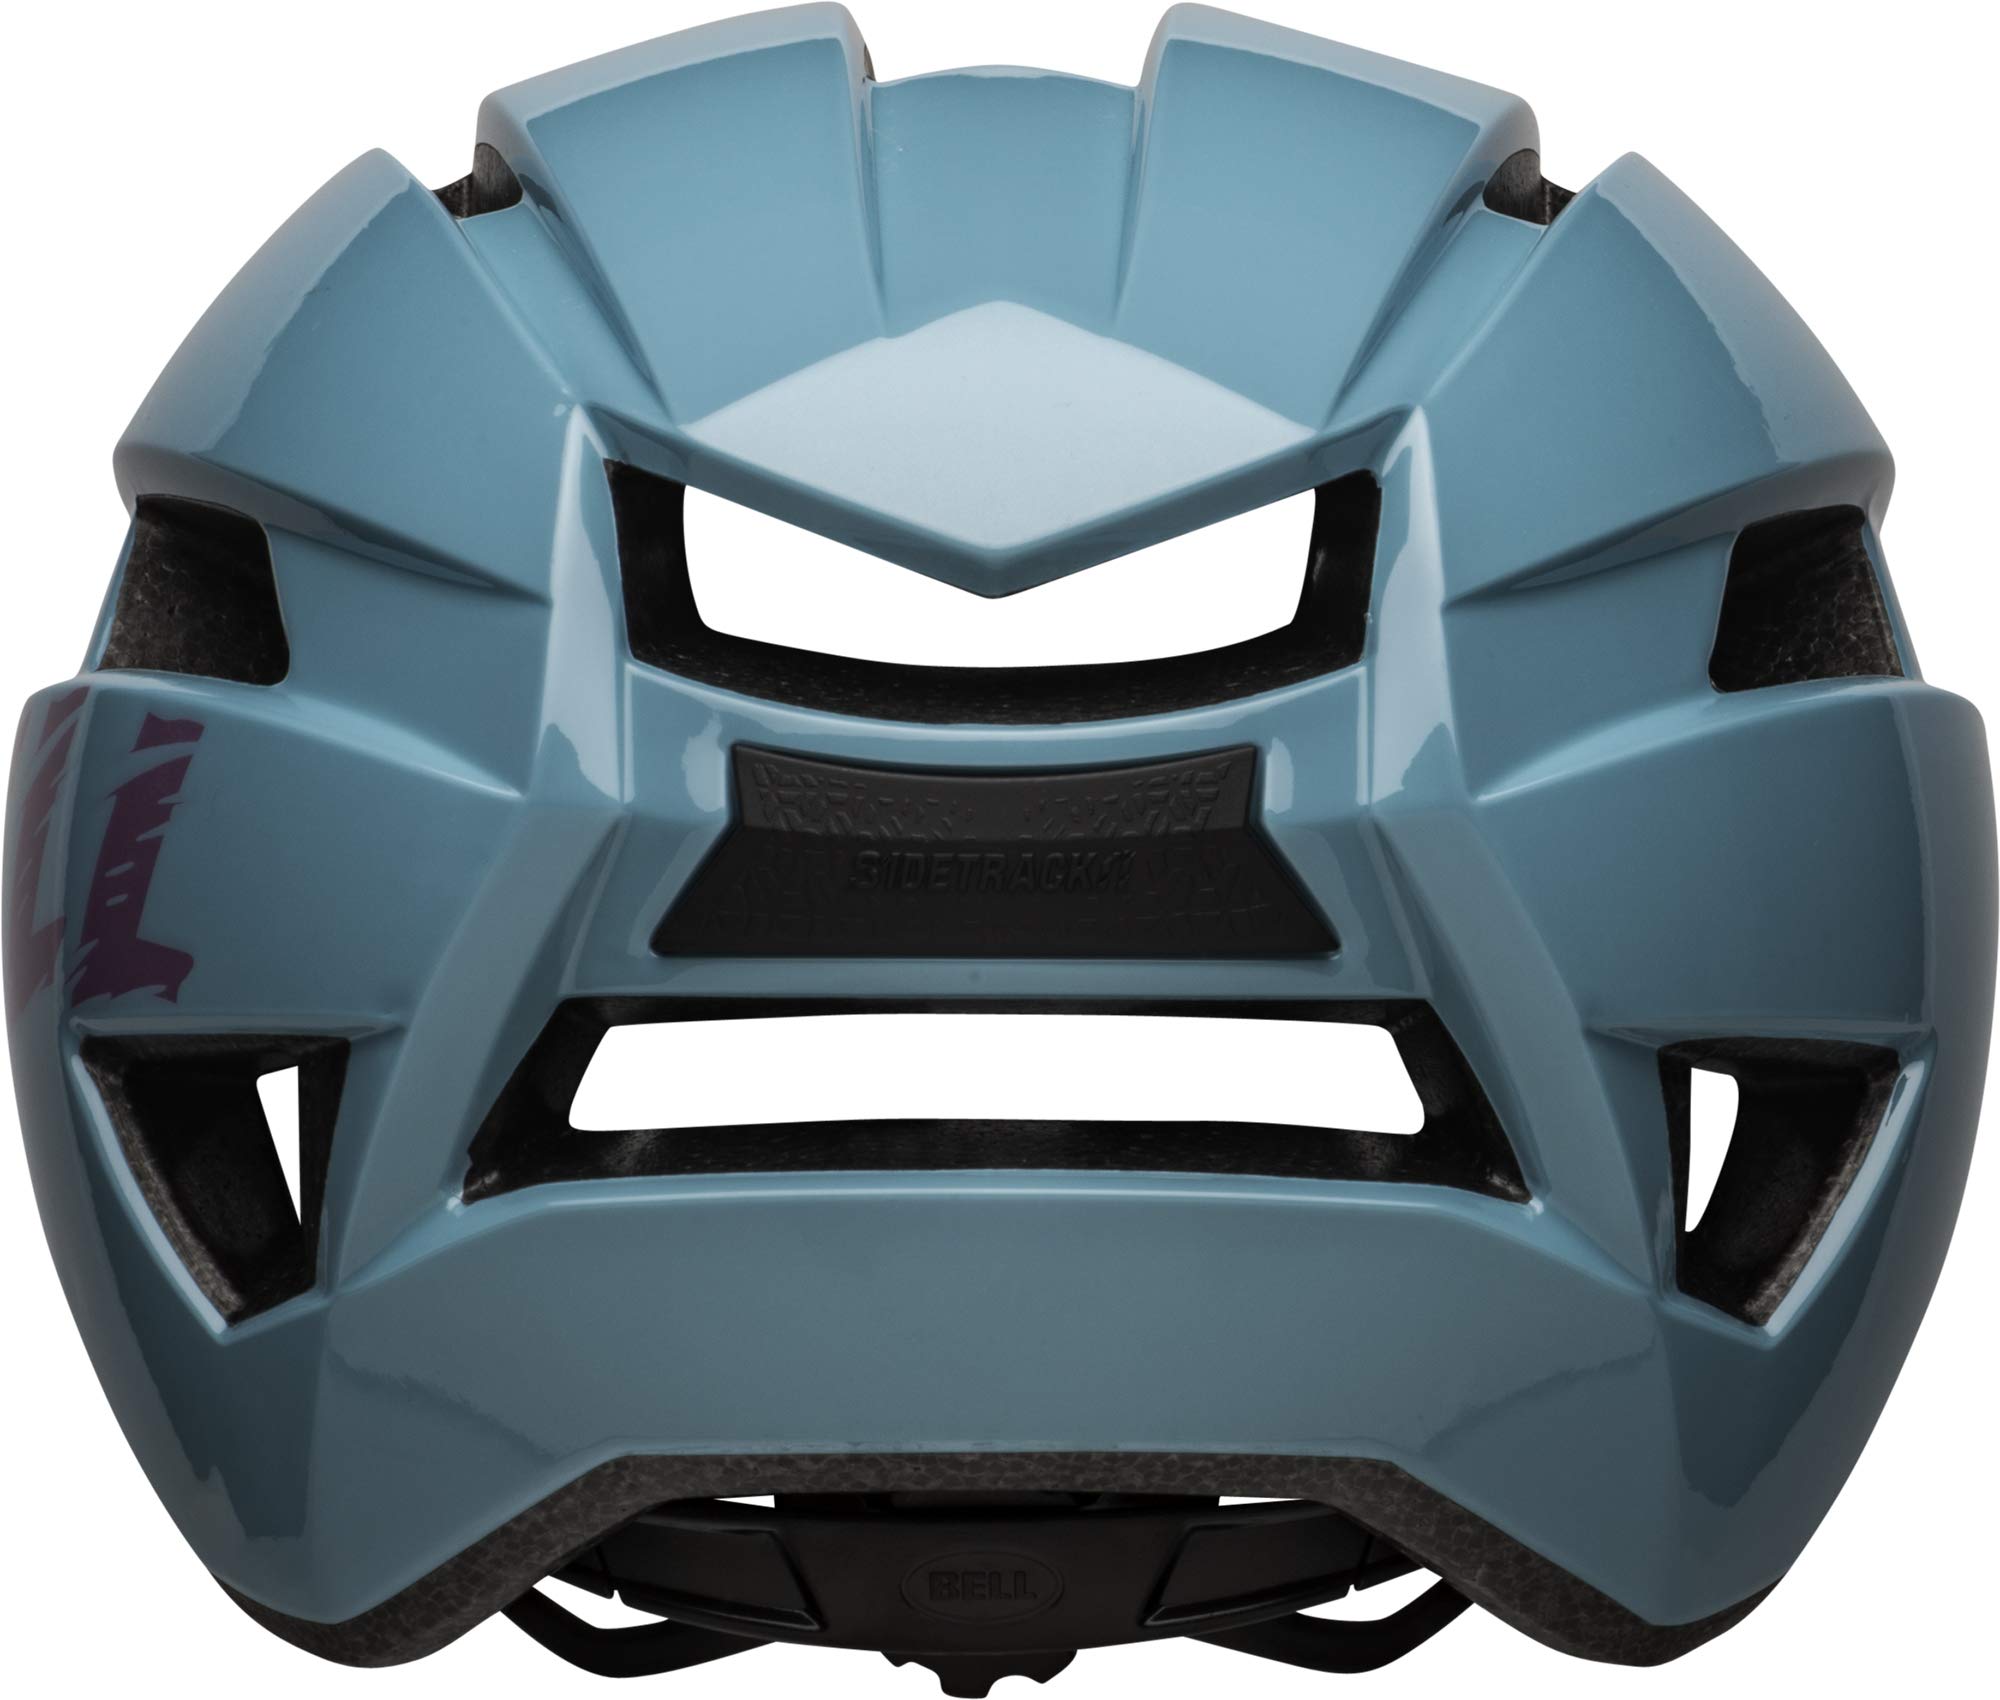 BELL Sidetrack II Youth Bike Helmet  - Like New